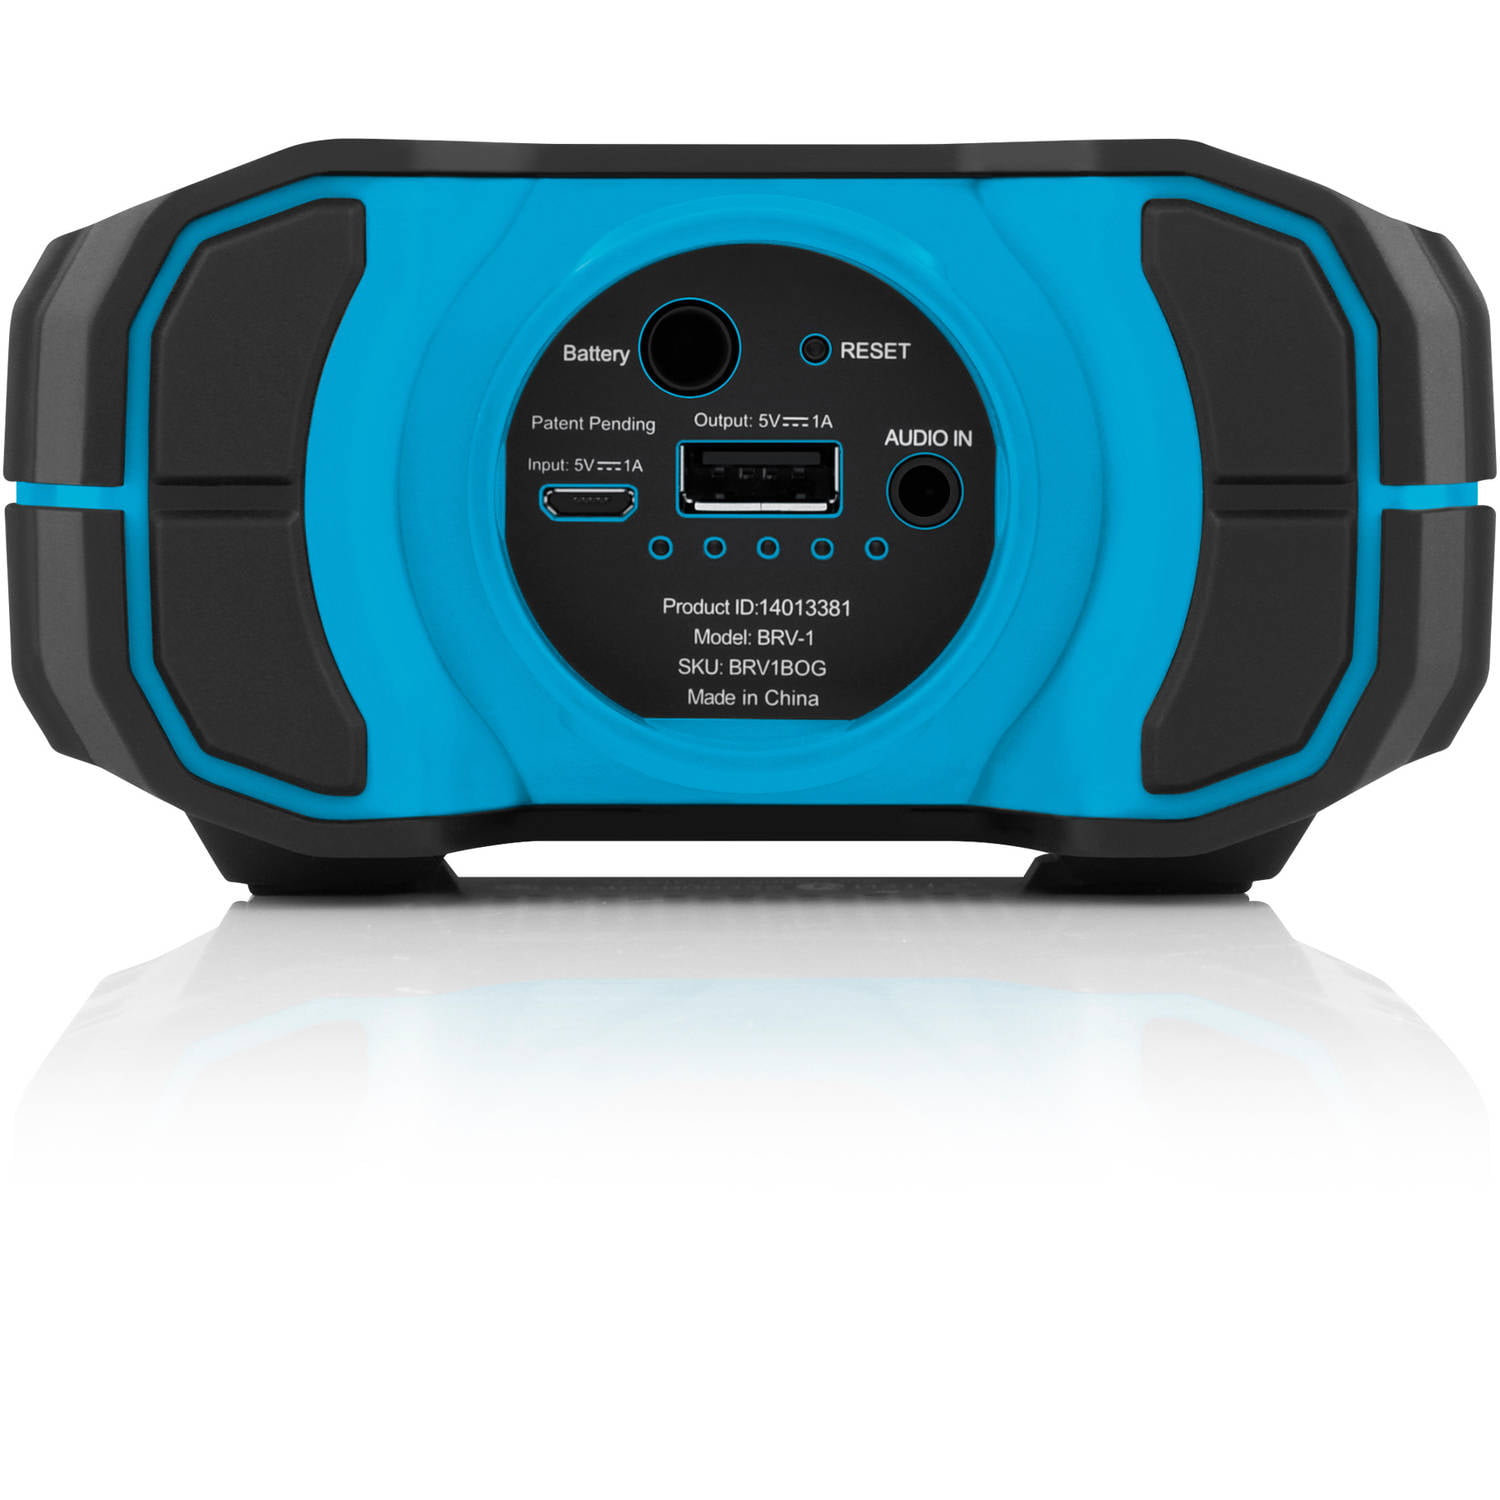 Wireless Waterproof Bluetooth Speaker Portable w/ Action Mount Black Braven  105 817729013095